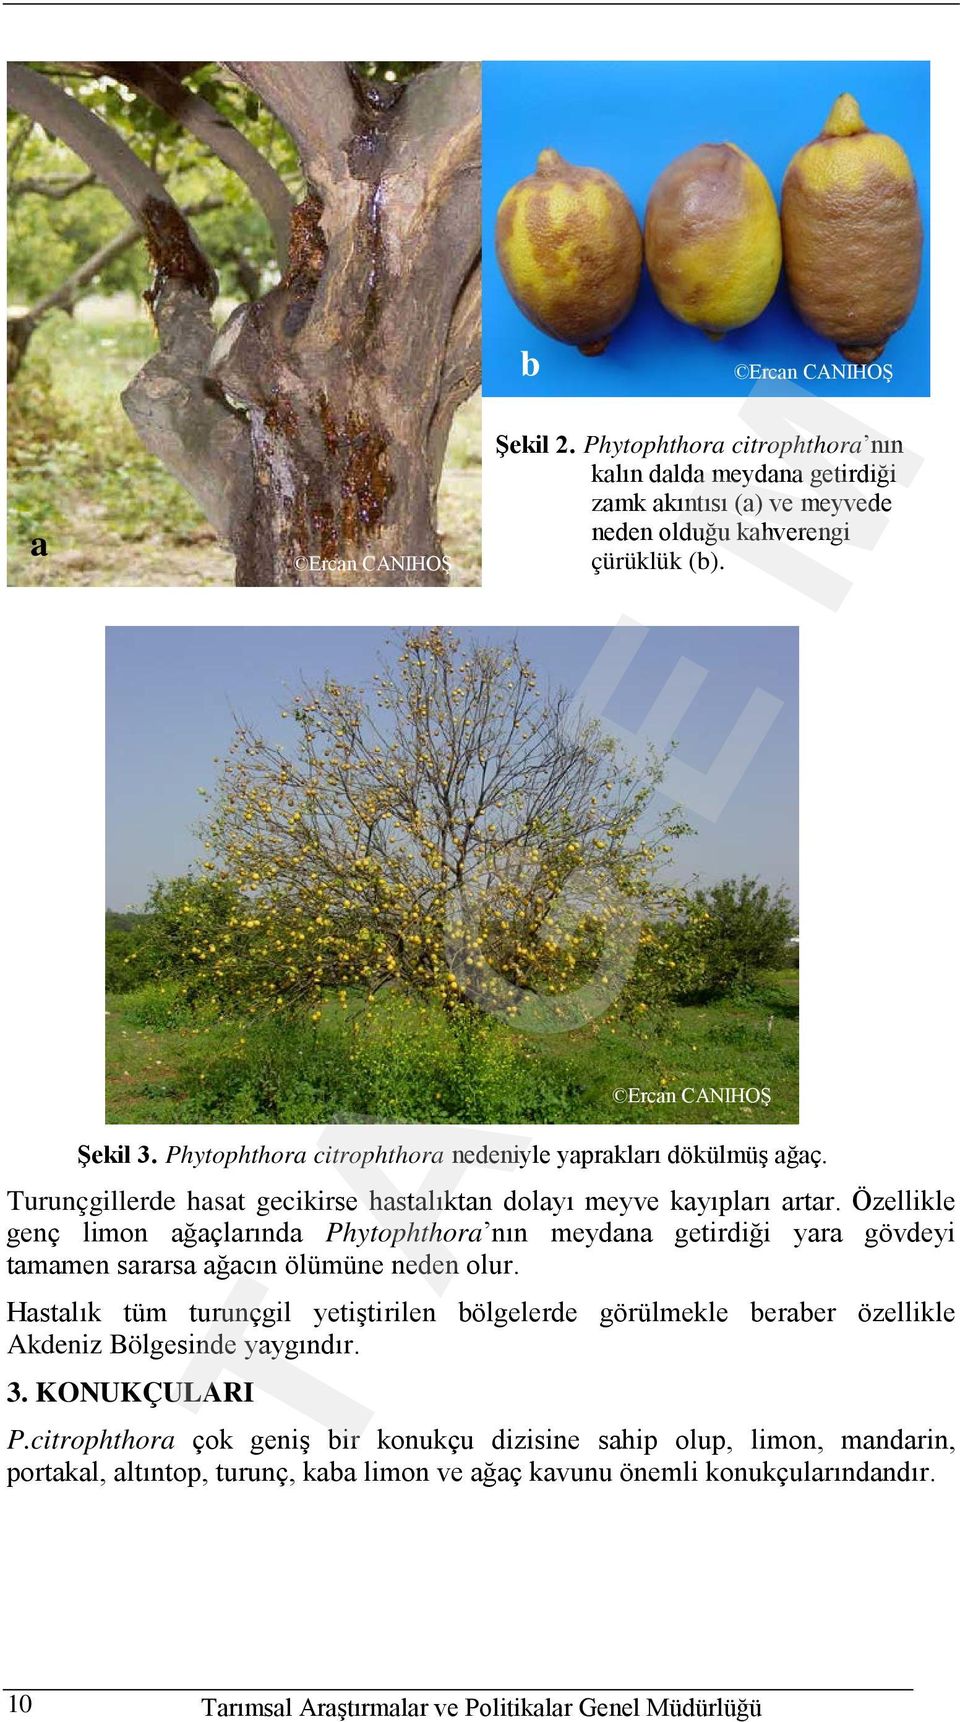 Özellikle genç limon ağaçlarında Phytophthora nın meydana getirdiği yara gövdeyi tamamen sararsa ağacın ölümüne neden olur.